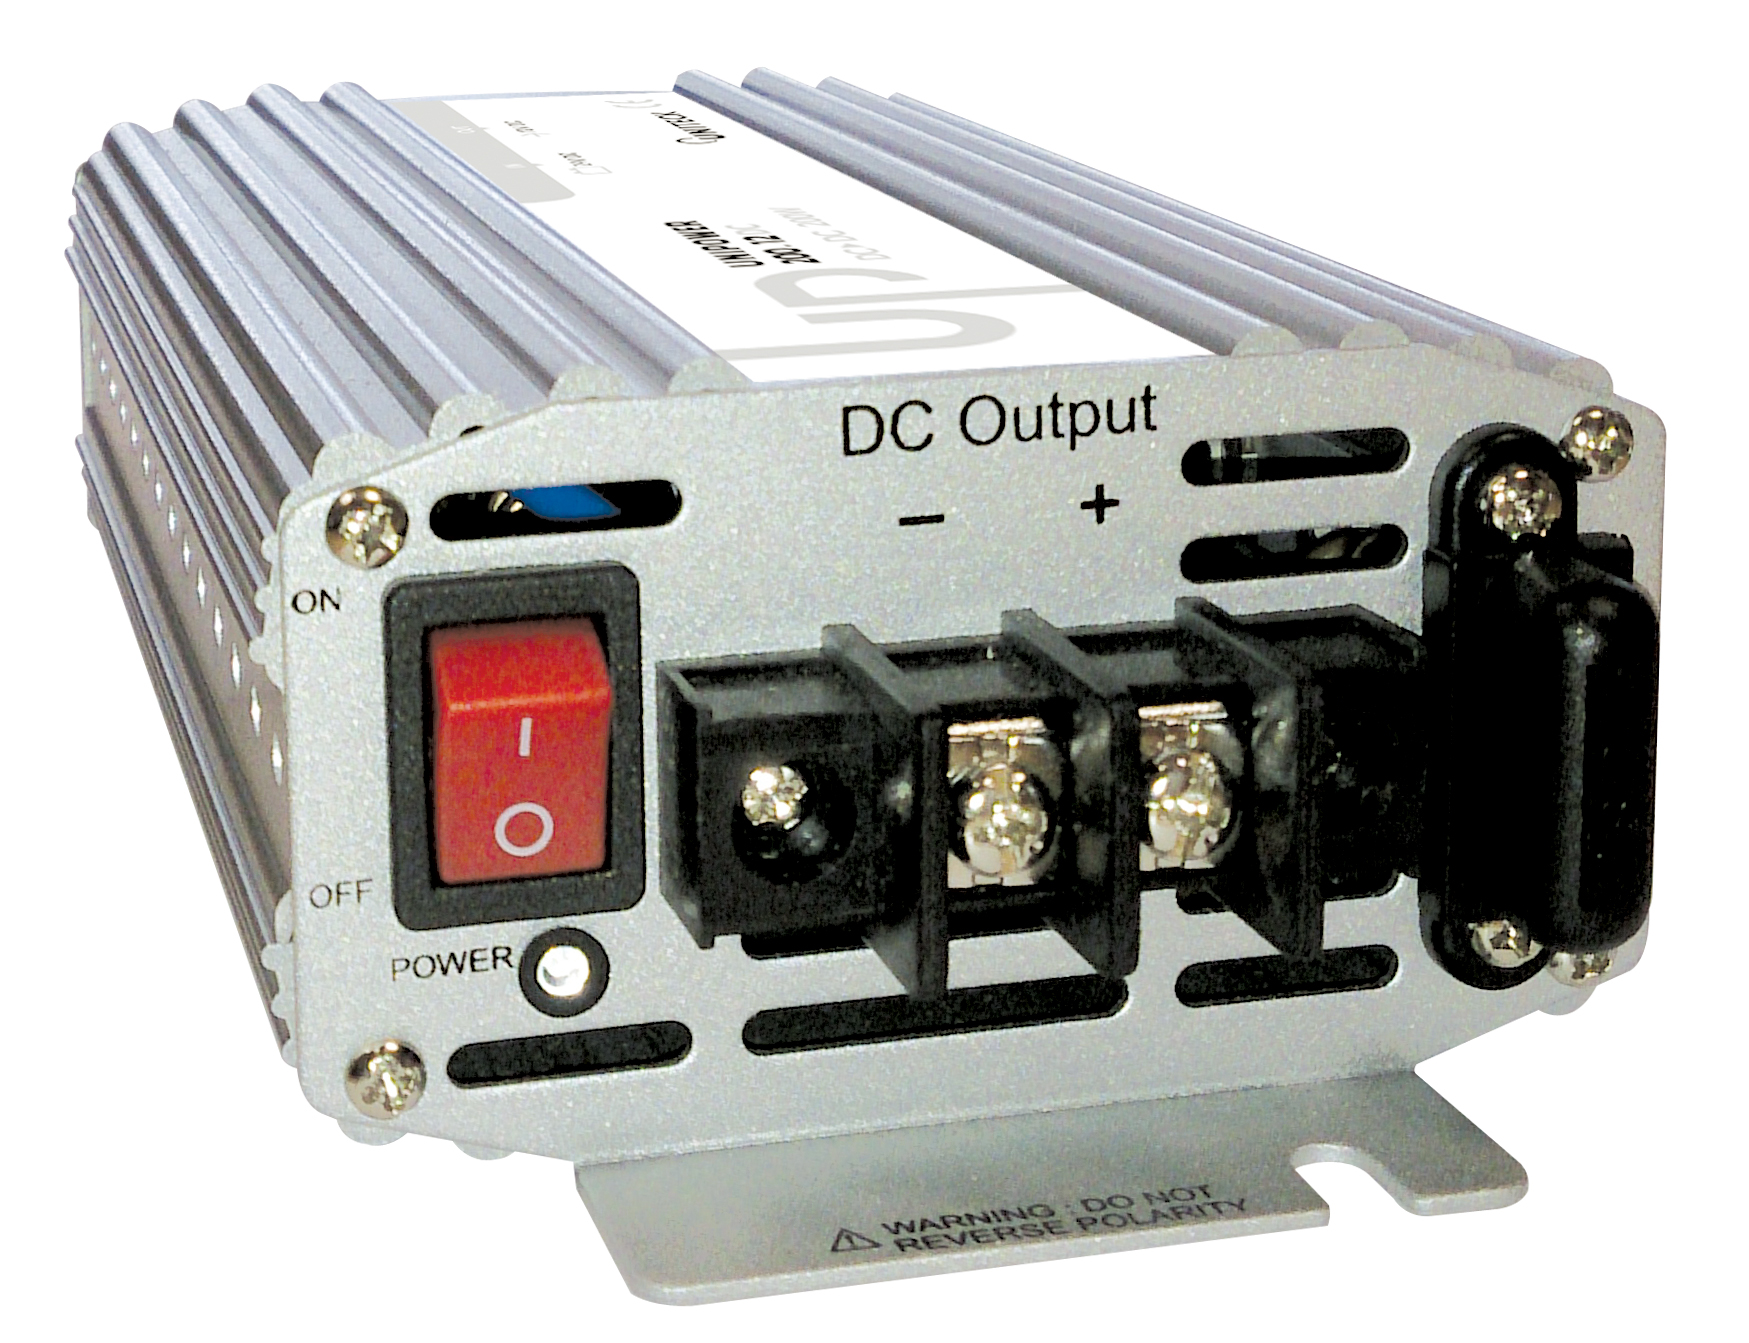 CONVERTISSEUR UNIPOWER 200.12DC 24V / 12V - 200W - Batterie Multi Services